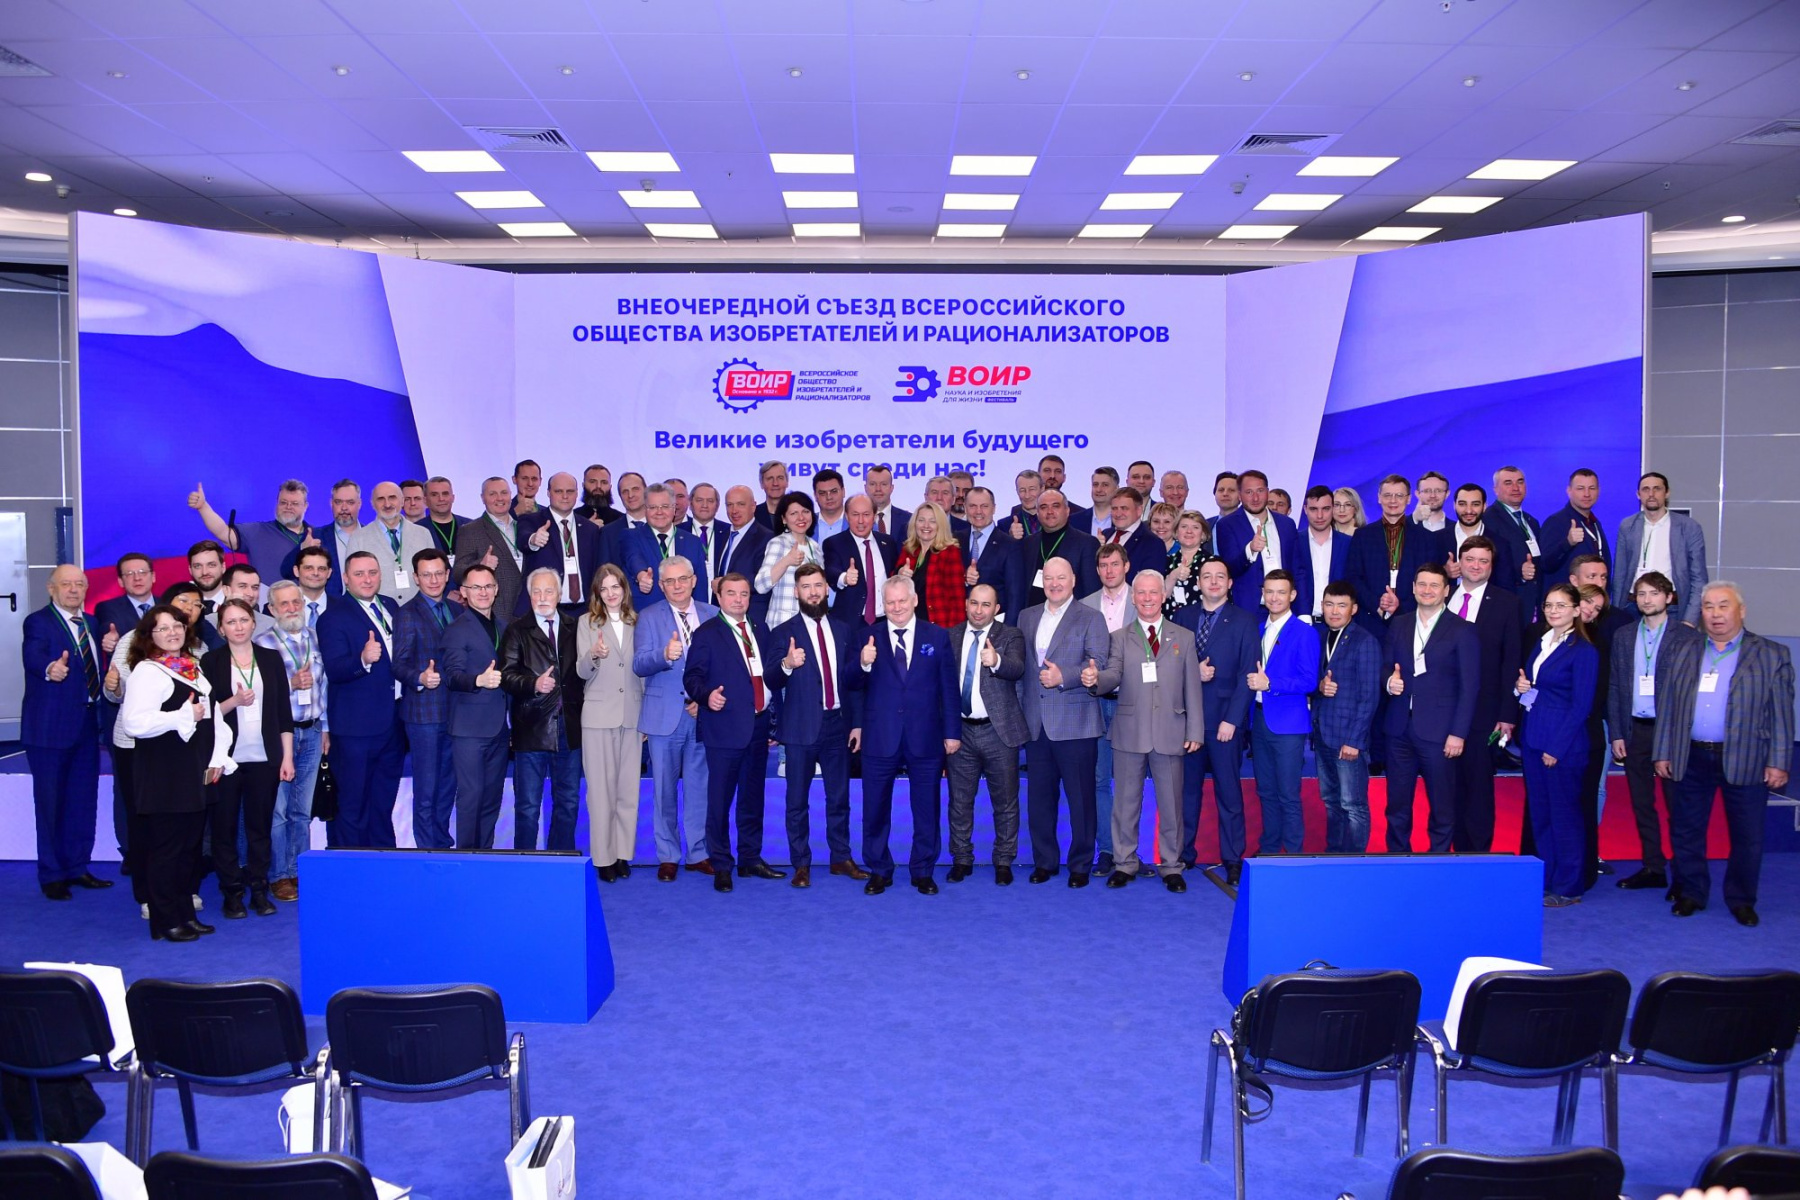 Представитель КГТУ принял участие во внеочередном съезде Всероссийского общества изобретателей и рационализаторов